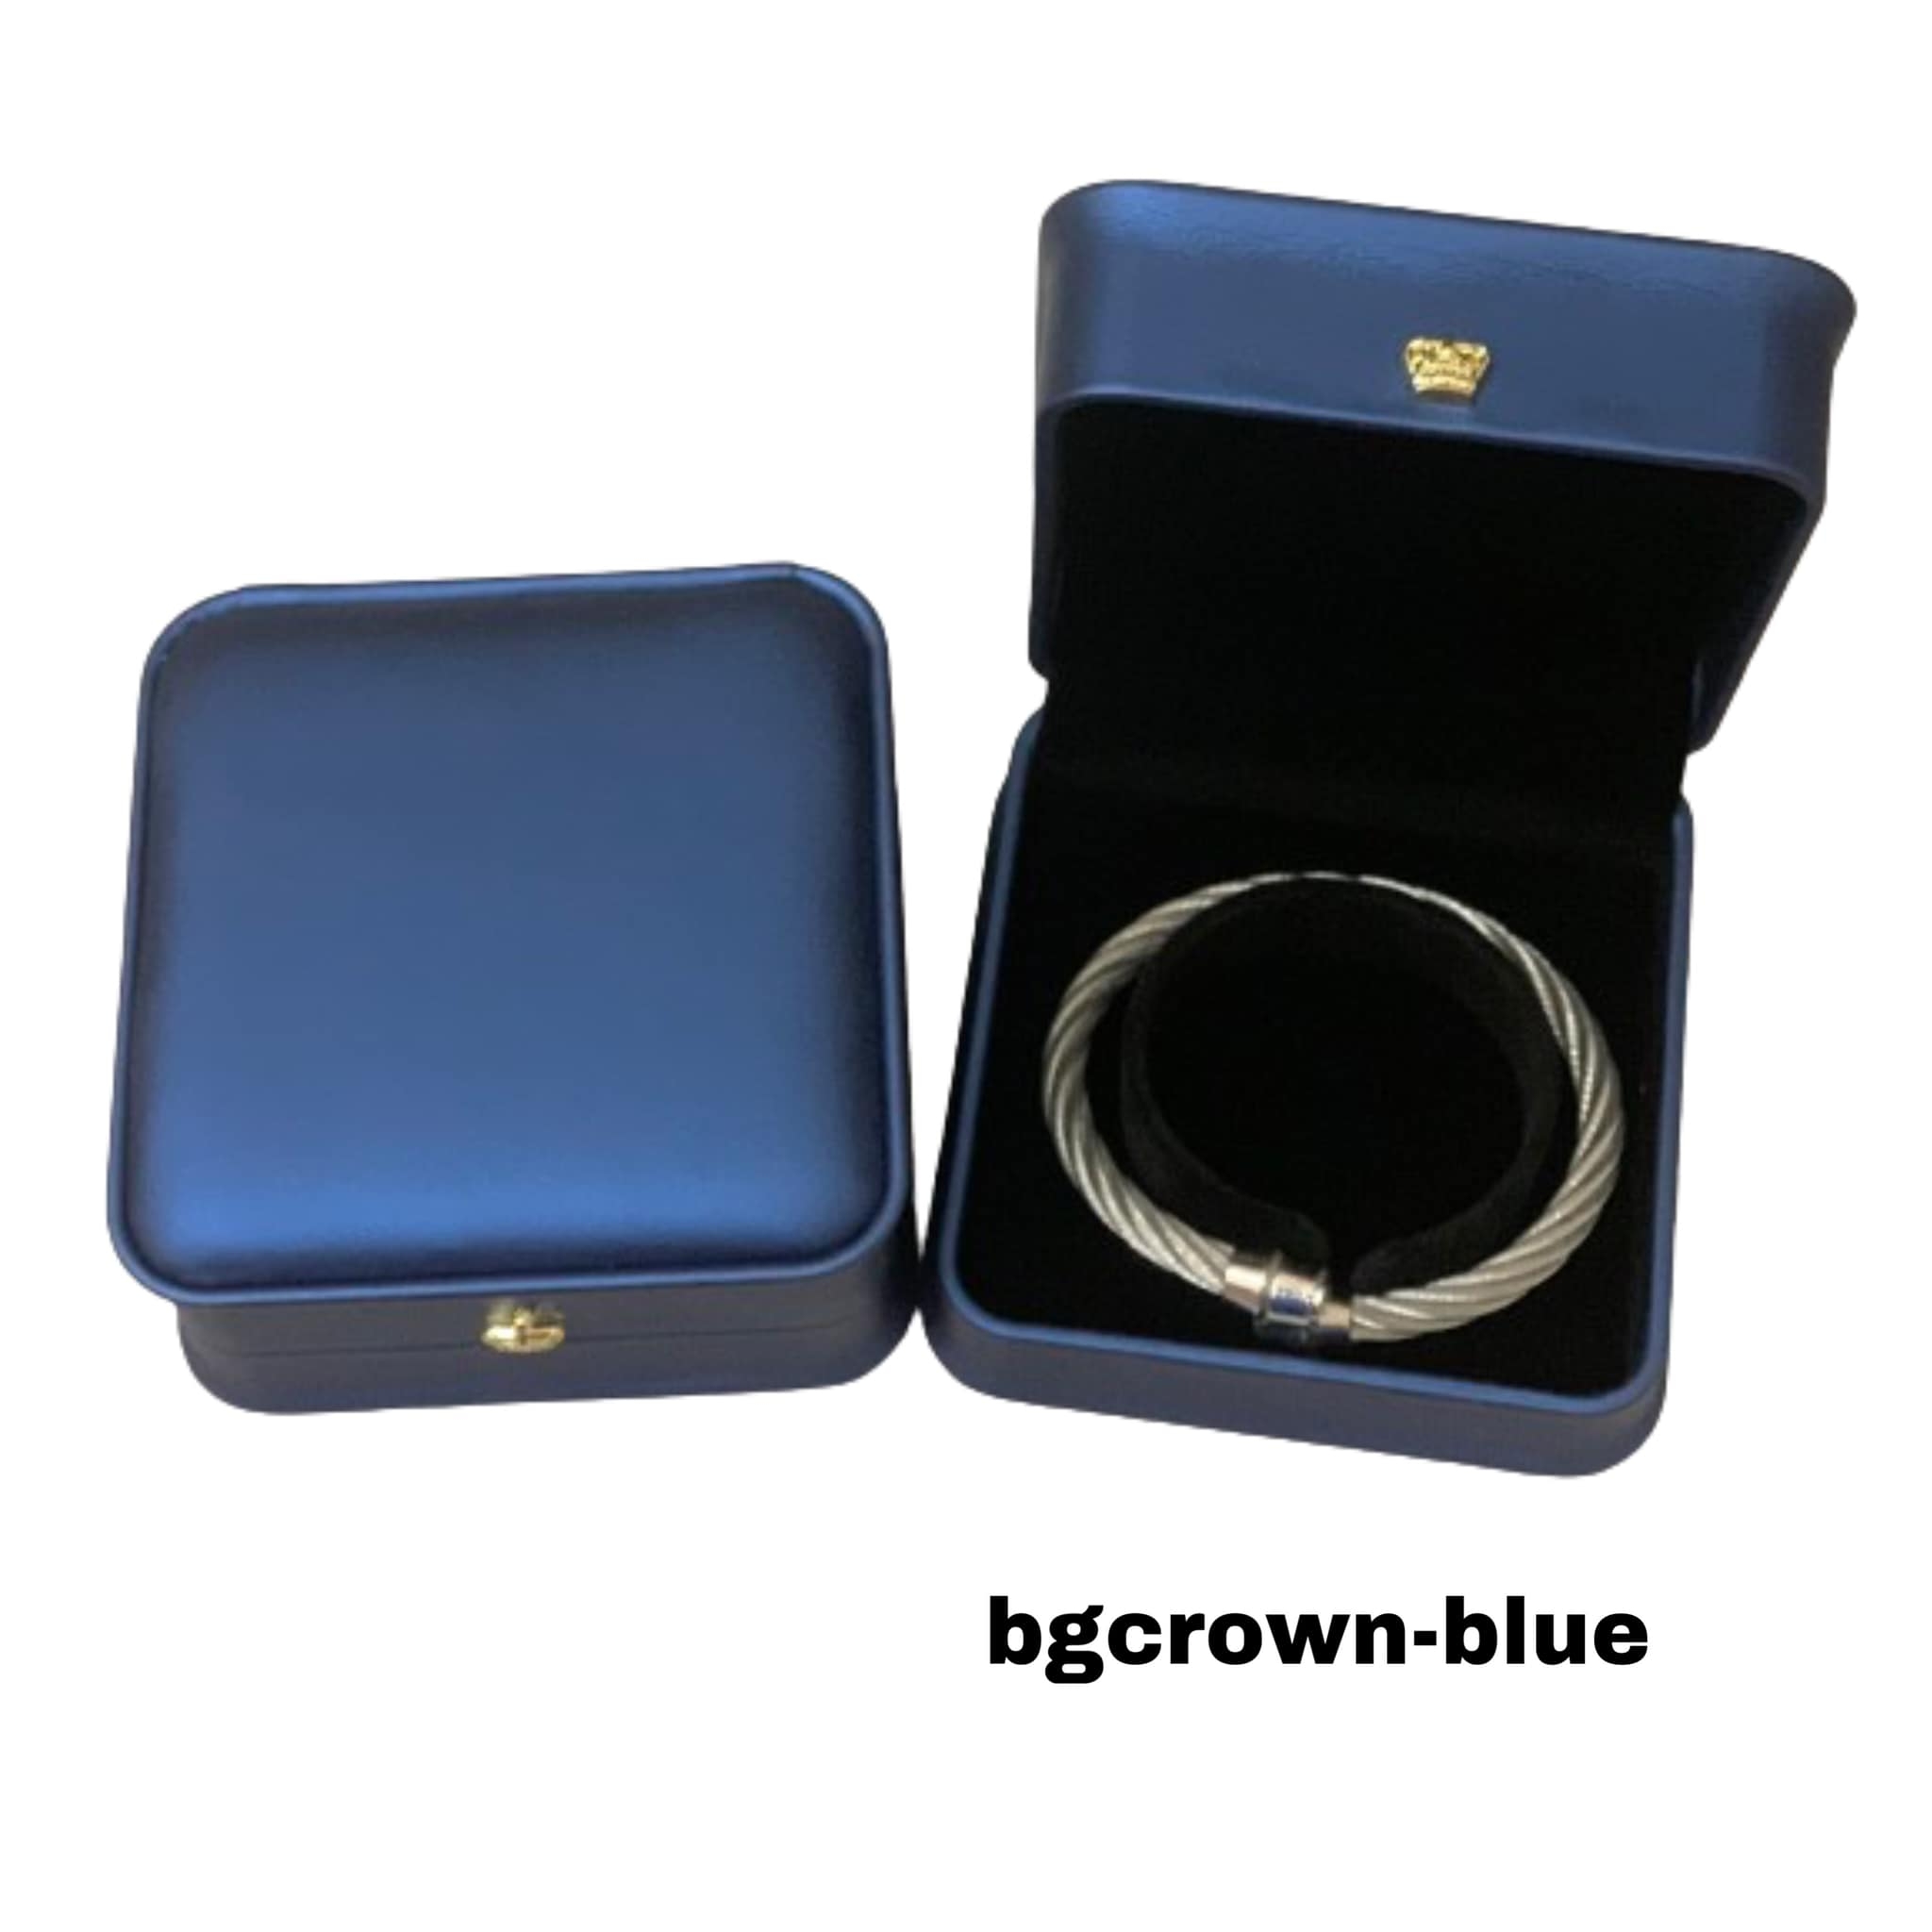 BGCROWN-BLUE